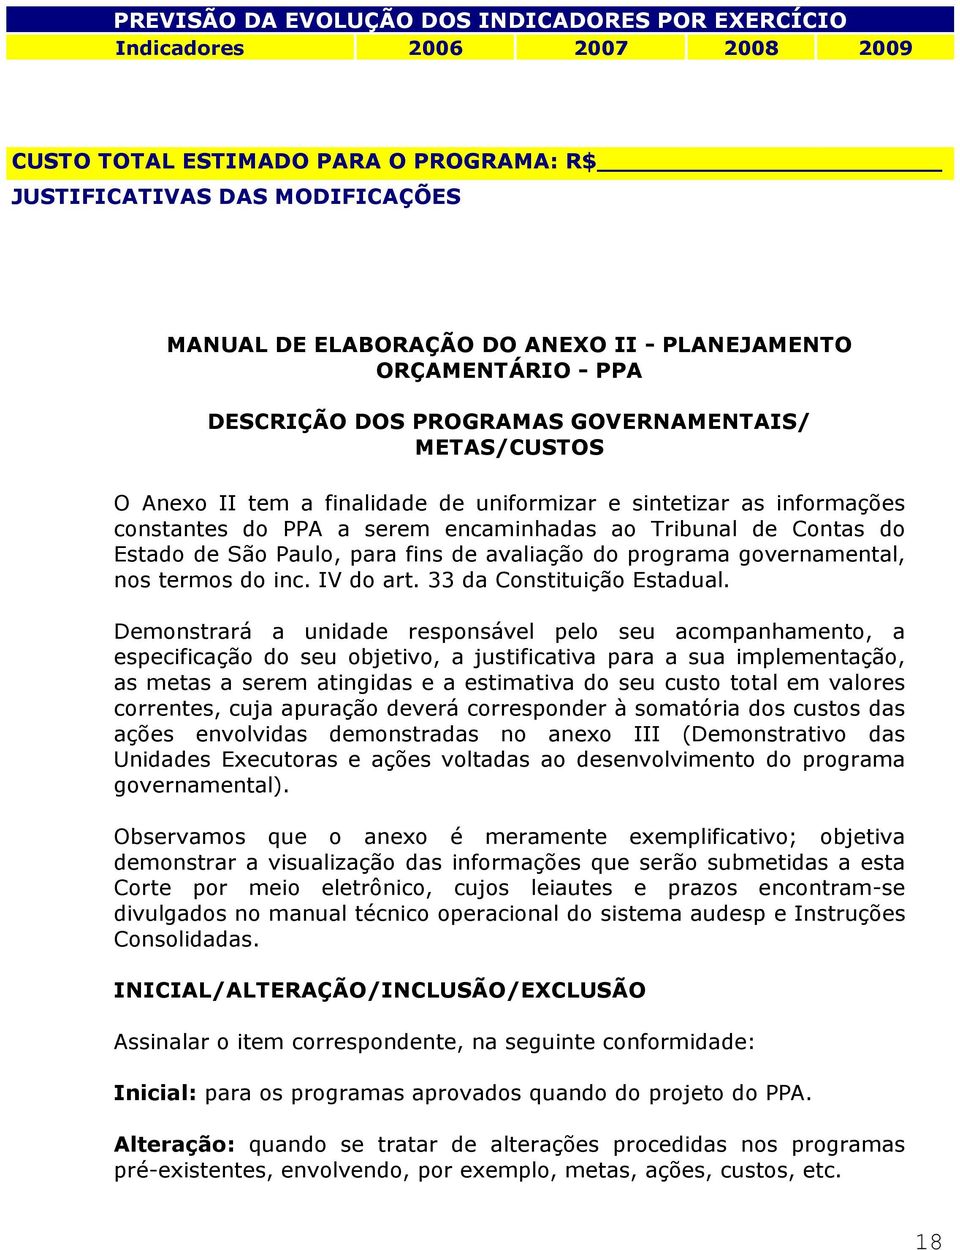 Tribunal de Contas do Estado de São Paulo, para fins de avaliação do programa governamental, nos termos do inc. IV do art. 33 da Constituição Estadual.